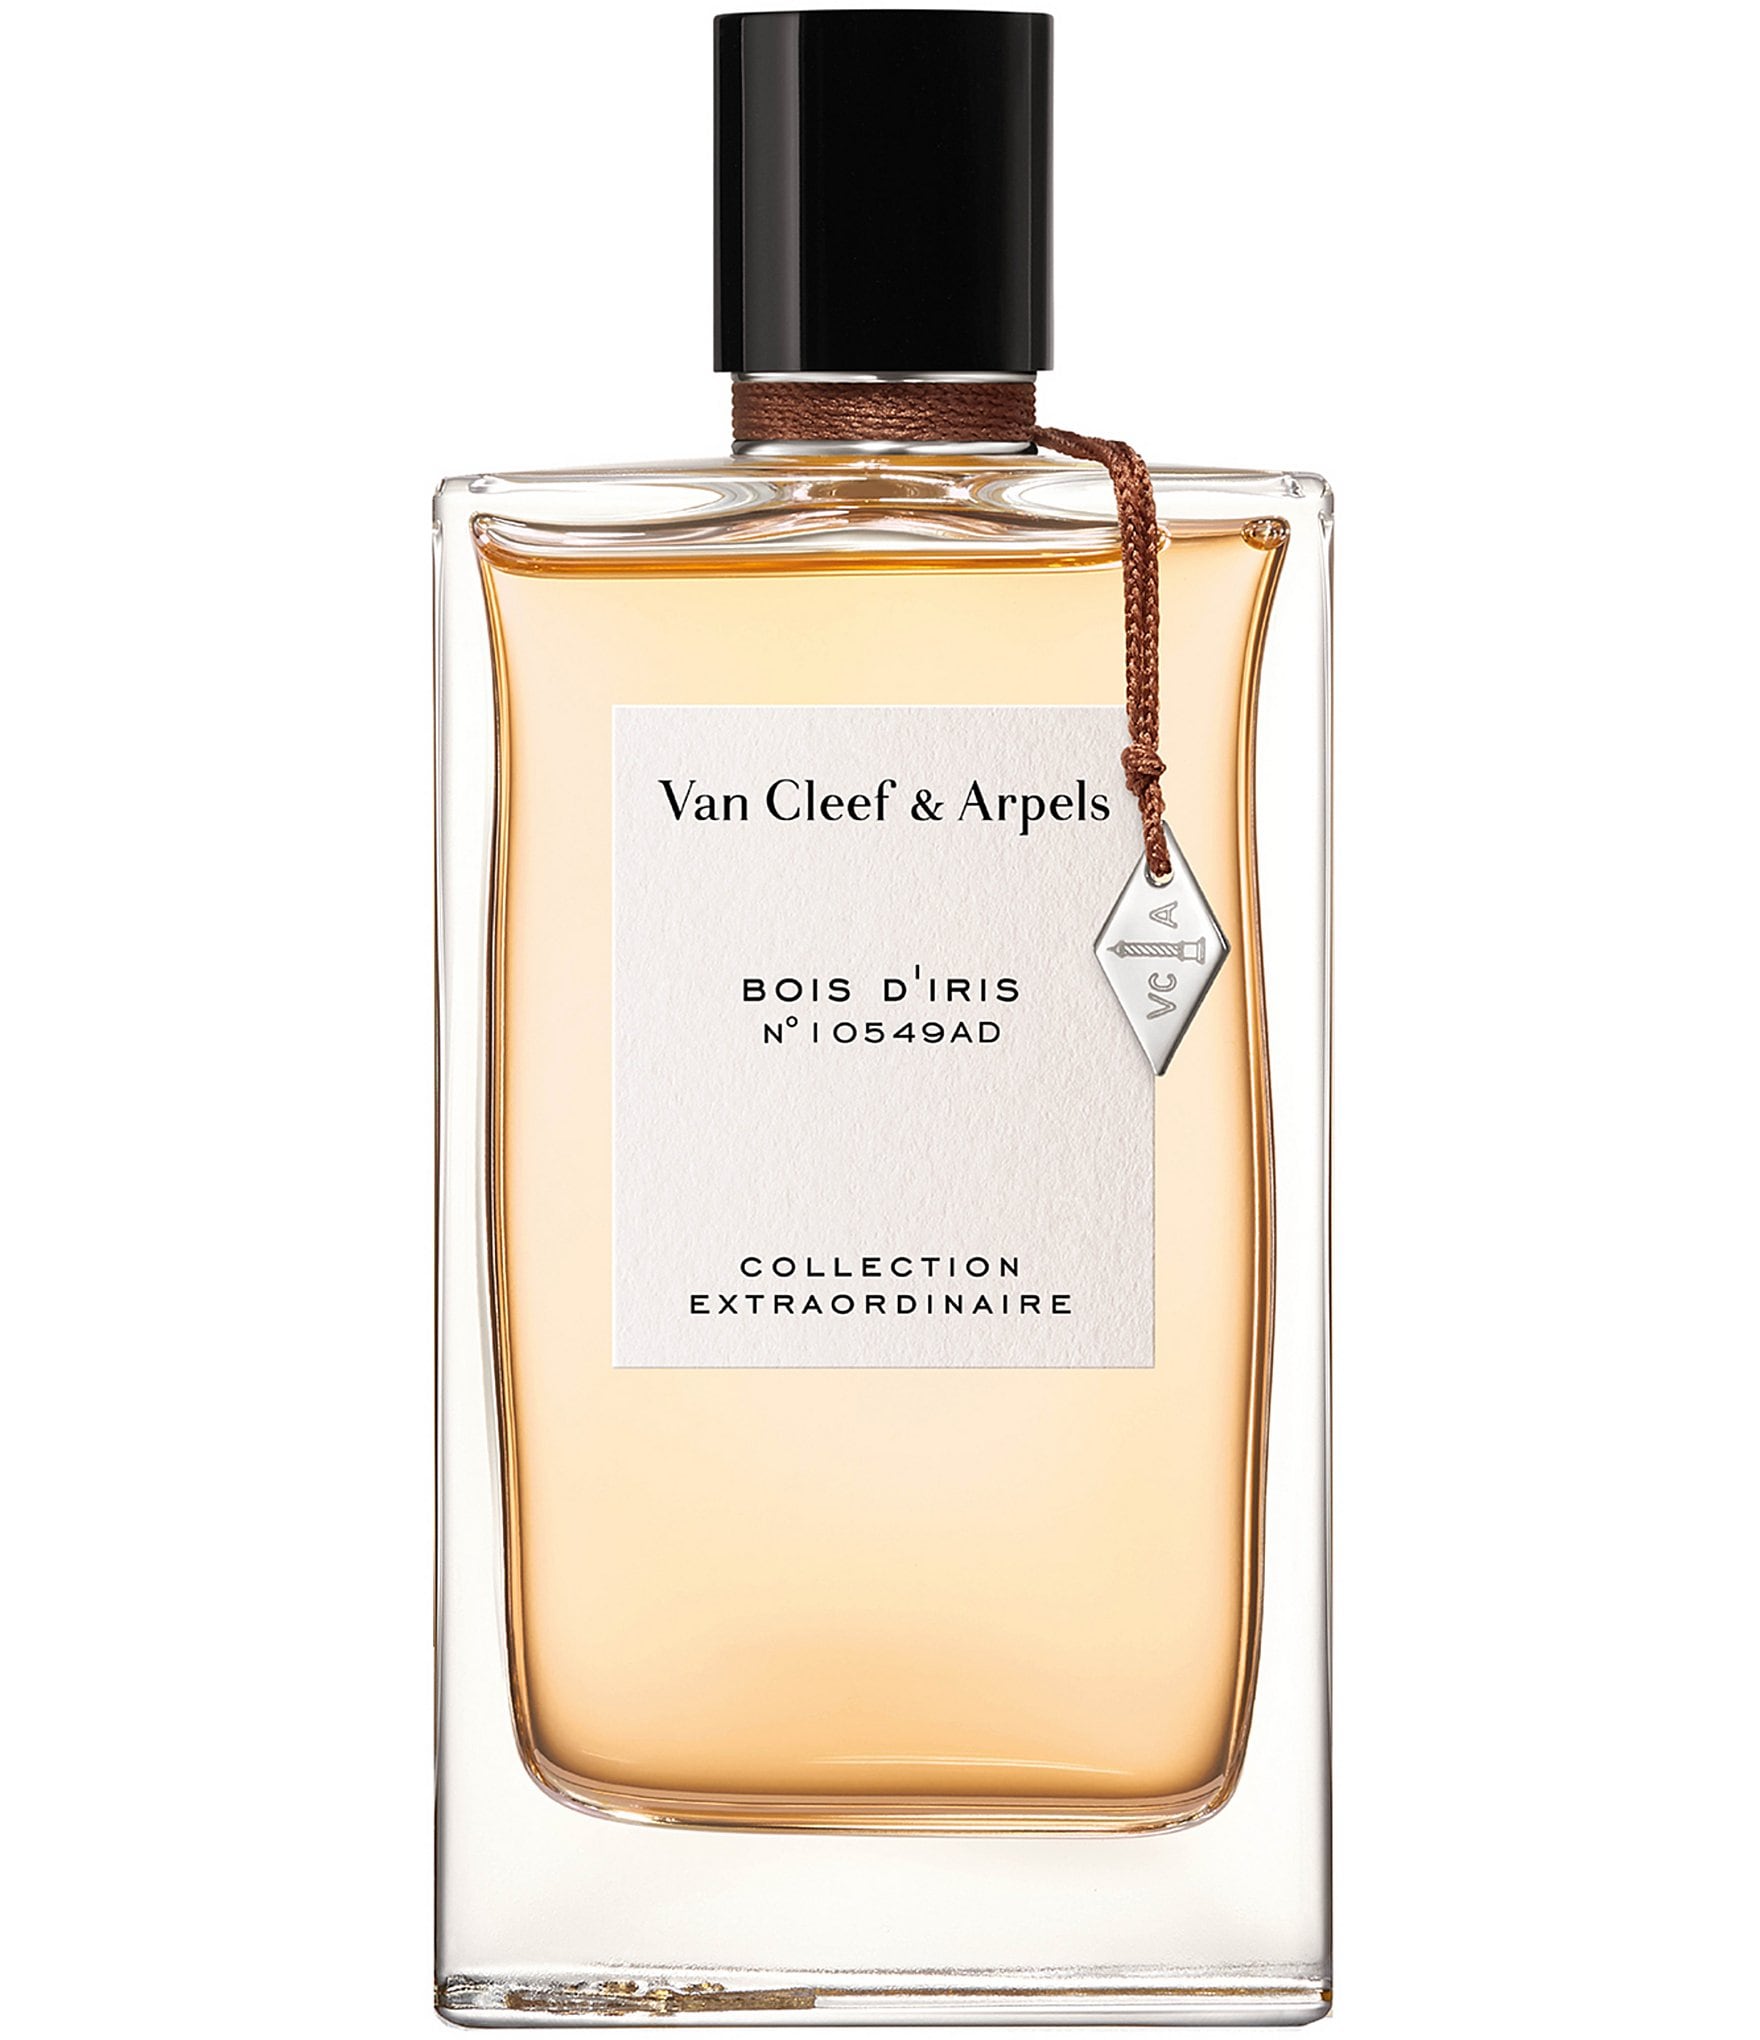 Van Cleef & Arpels Collection Extraordinaire Bois d'Iris Eau de Parfum ...